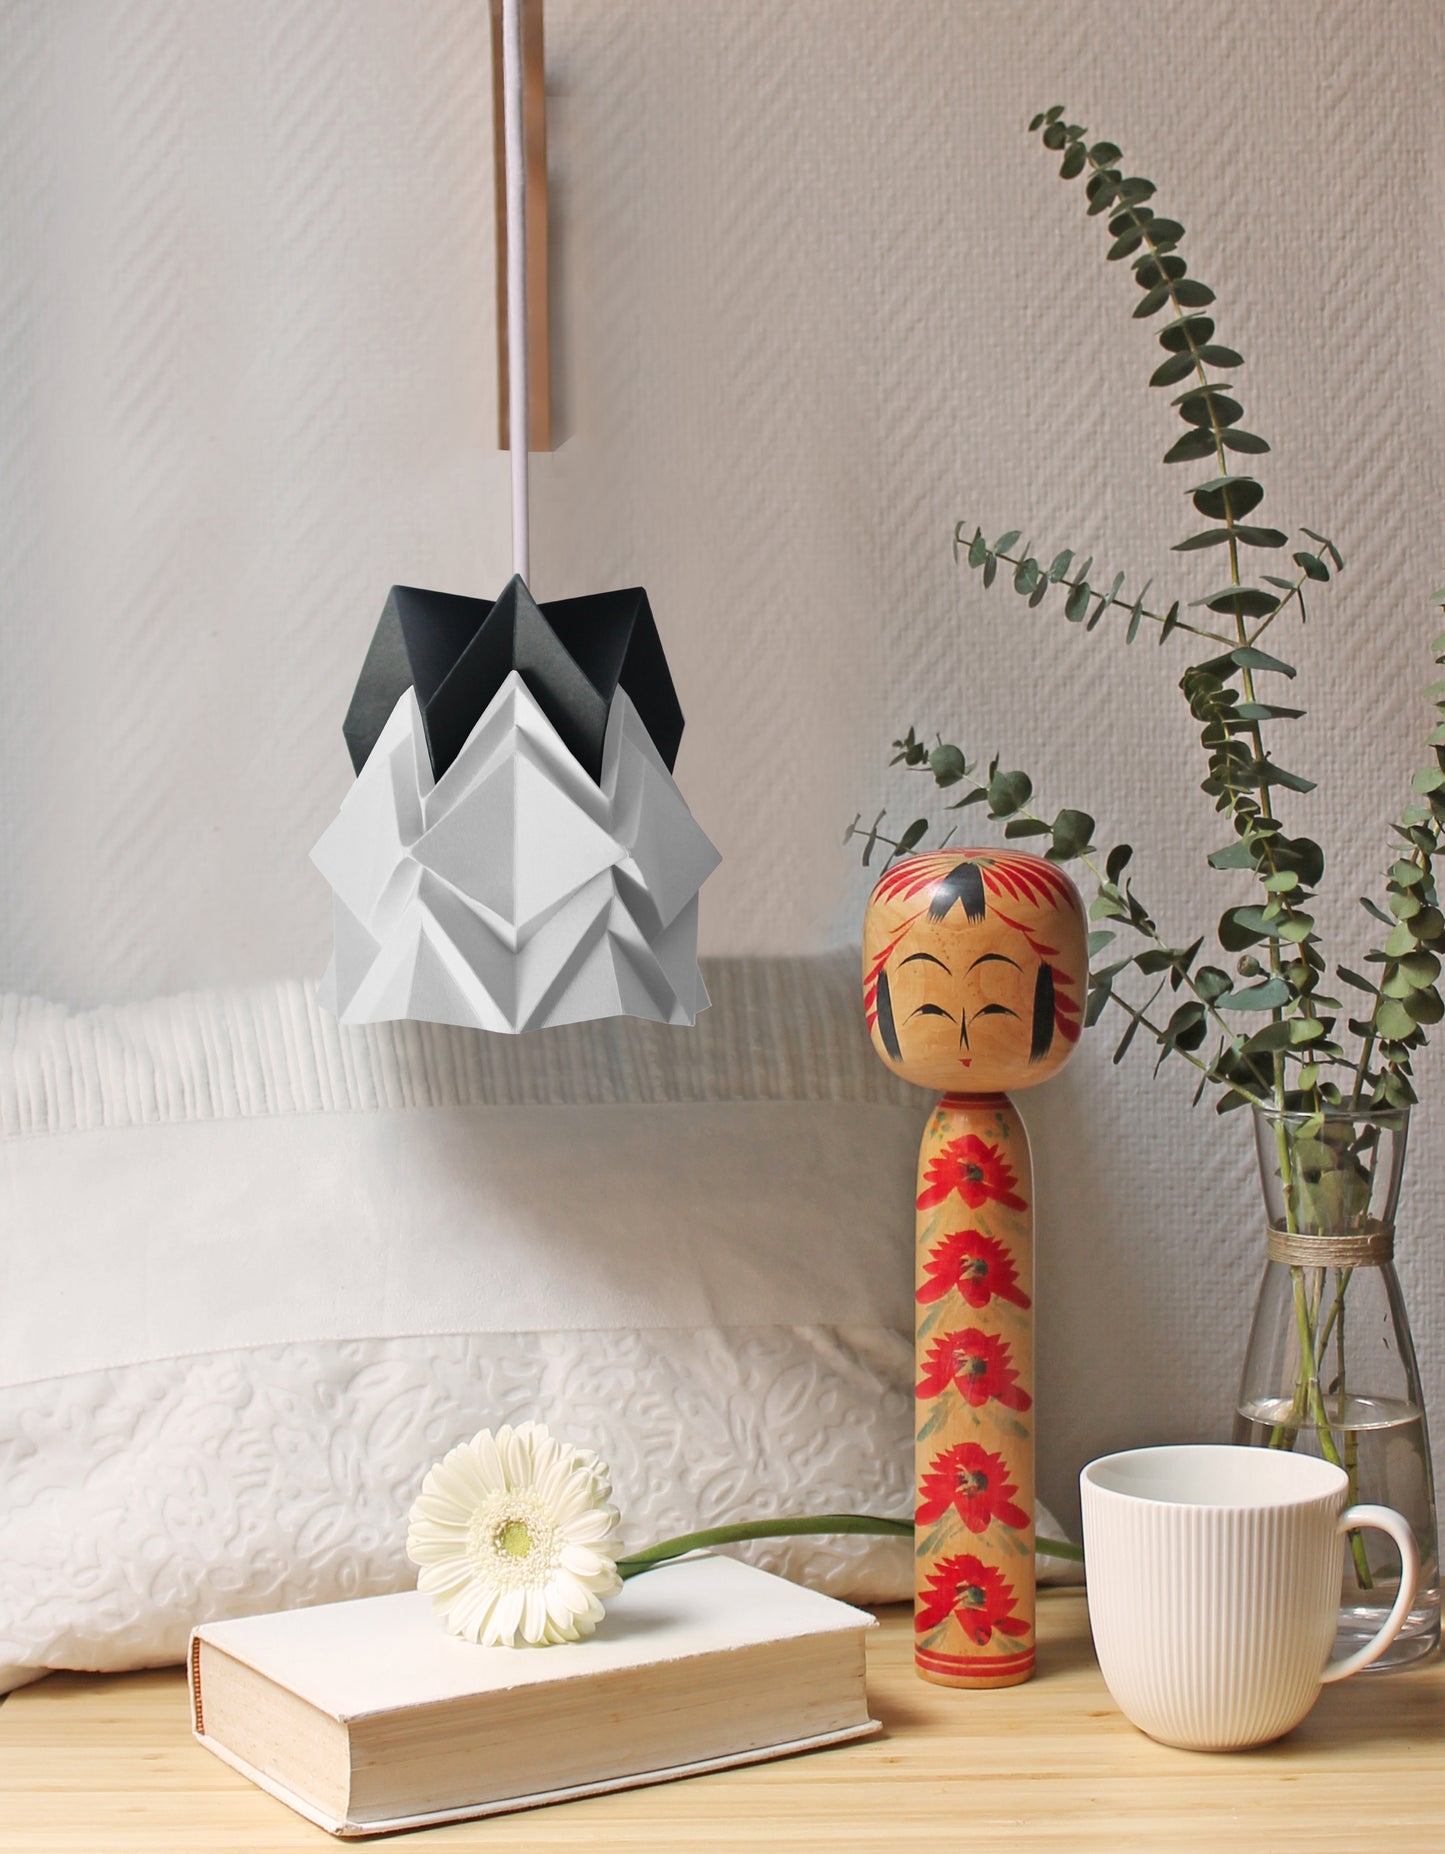 Petite suspension Origami  Design Bicolore en Papier